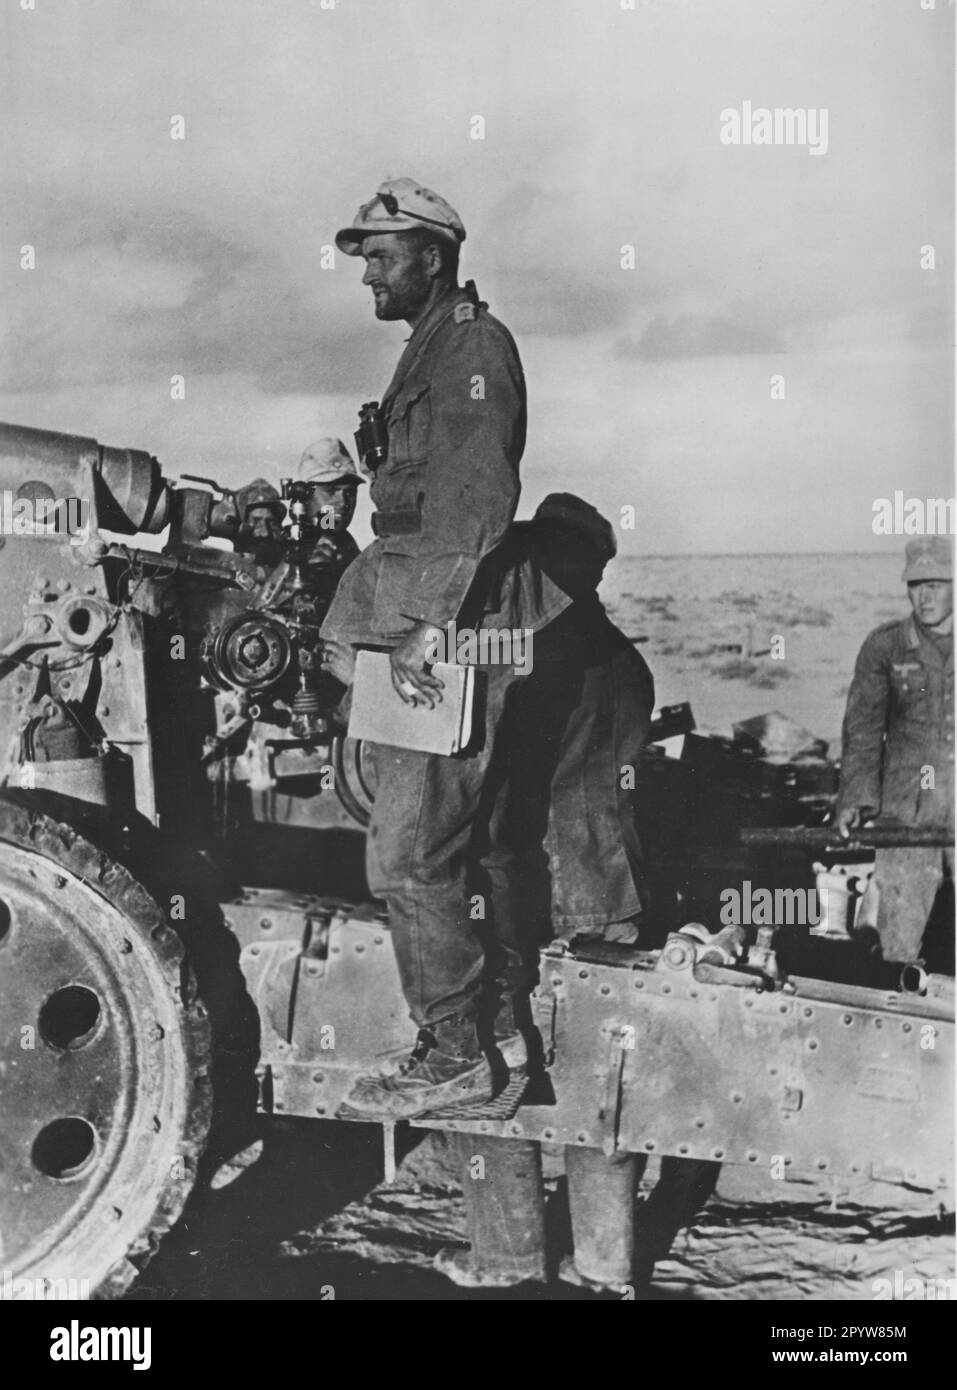 Équipage d'une pièce d'artillerie de l'Afrika Korps, probablement un obusier de champ lumineux de 15cm 18. Devant le tireur. Photo: Dörner [traduction automatique] Banque D'Images